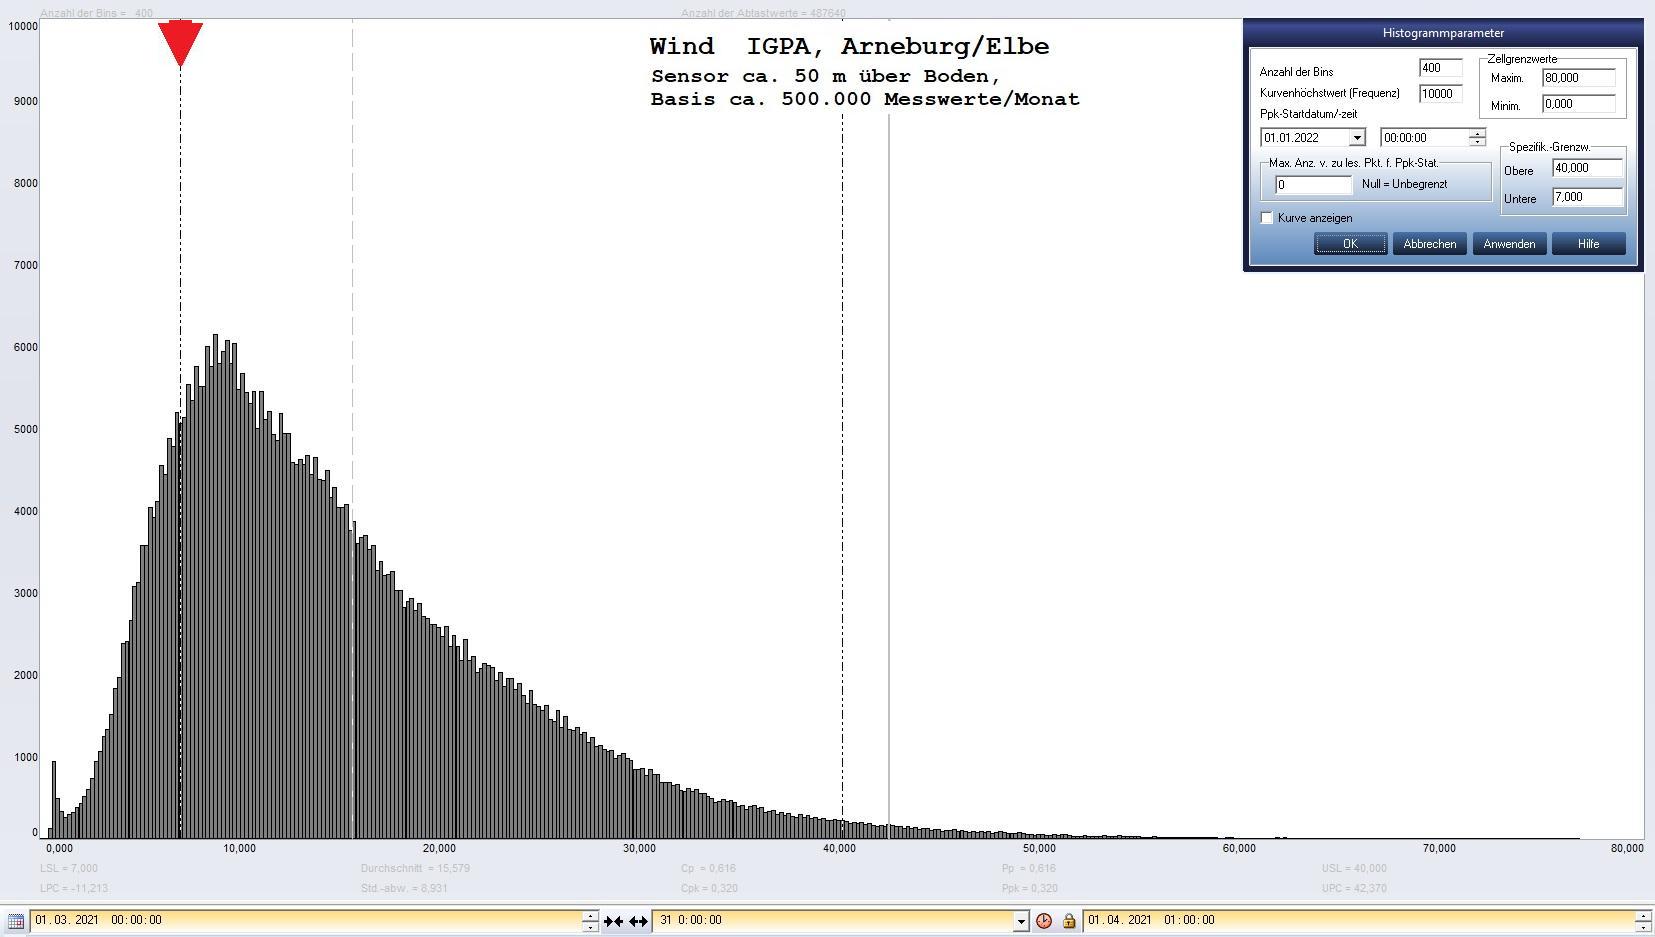 Arneburg Histogramm Winddaten Monat März 2021, 
  Sensor auf Gebäude, ca. 50 m über Erdboden, Basis: 5s-Aufzeichnung